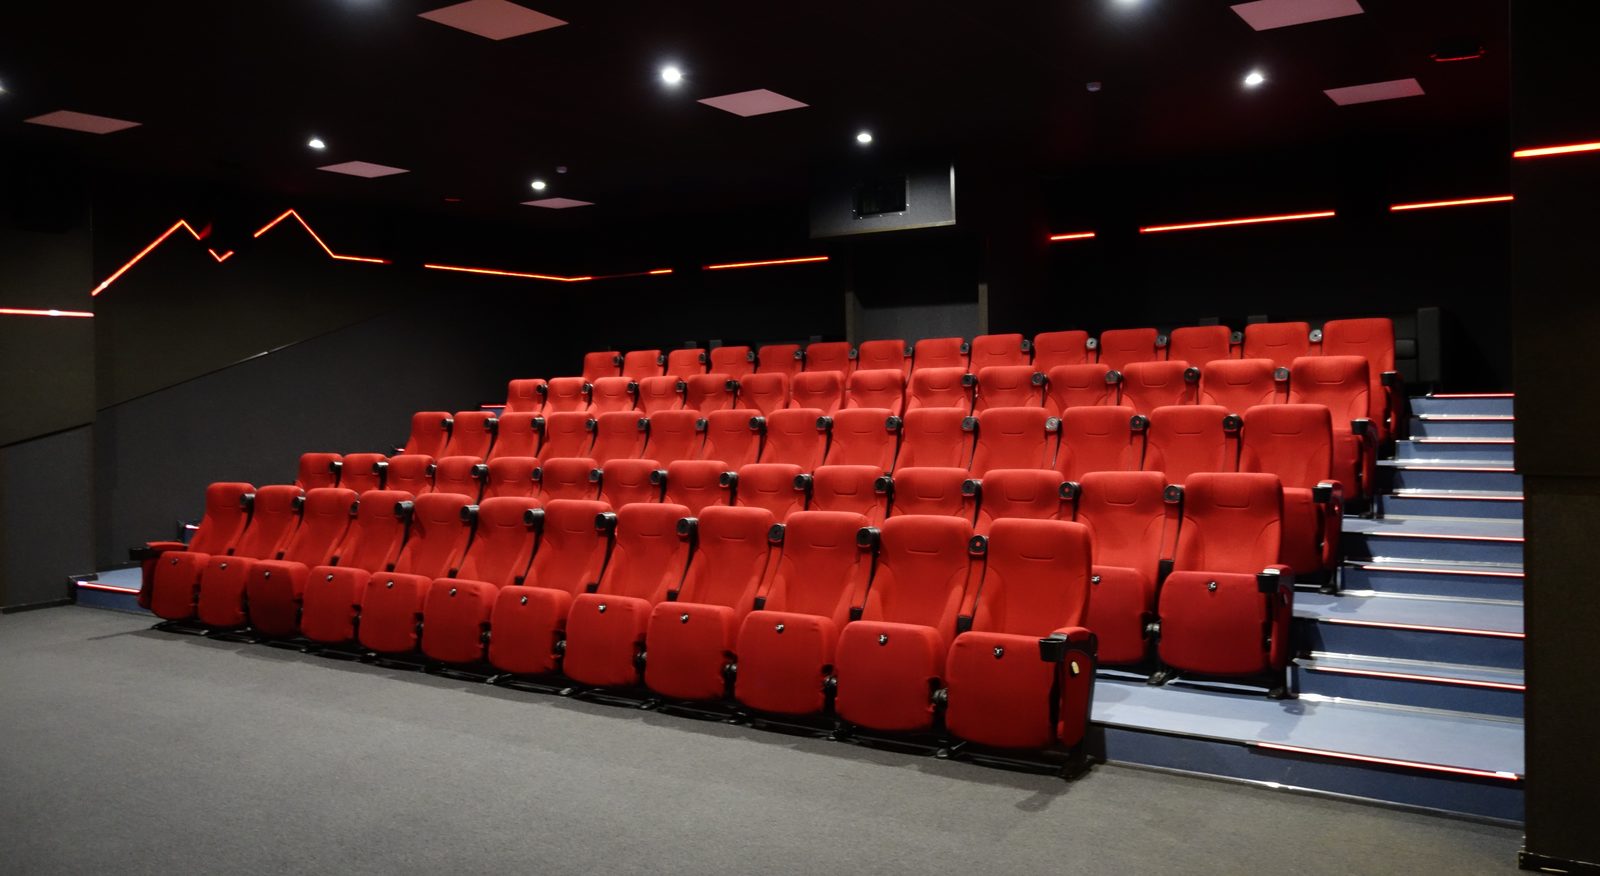 Фонд кино поддержит более 60 региональных кинозалов в 2020 году